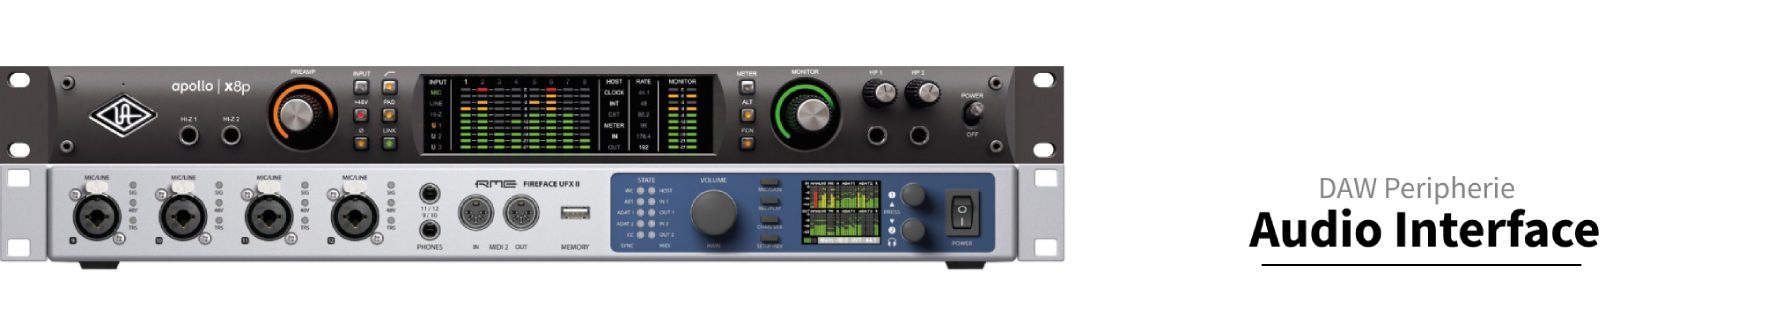 Audio Interface-8 Inputs-ADAT In-8 Preamps-2 DI-192 kHz-extern 19 Zoll